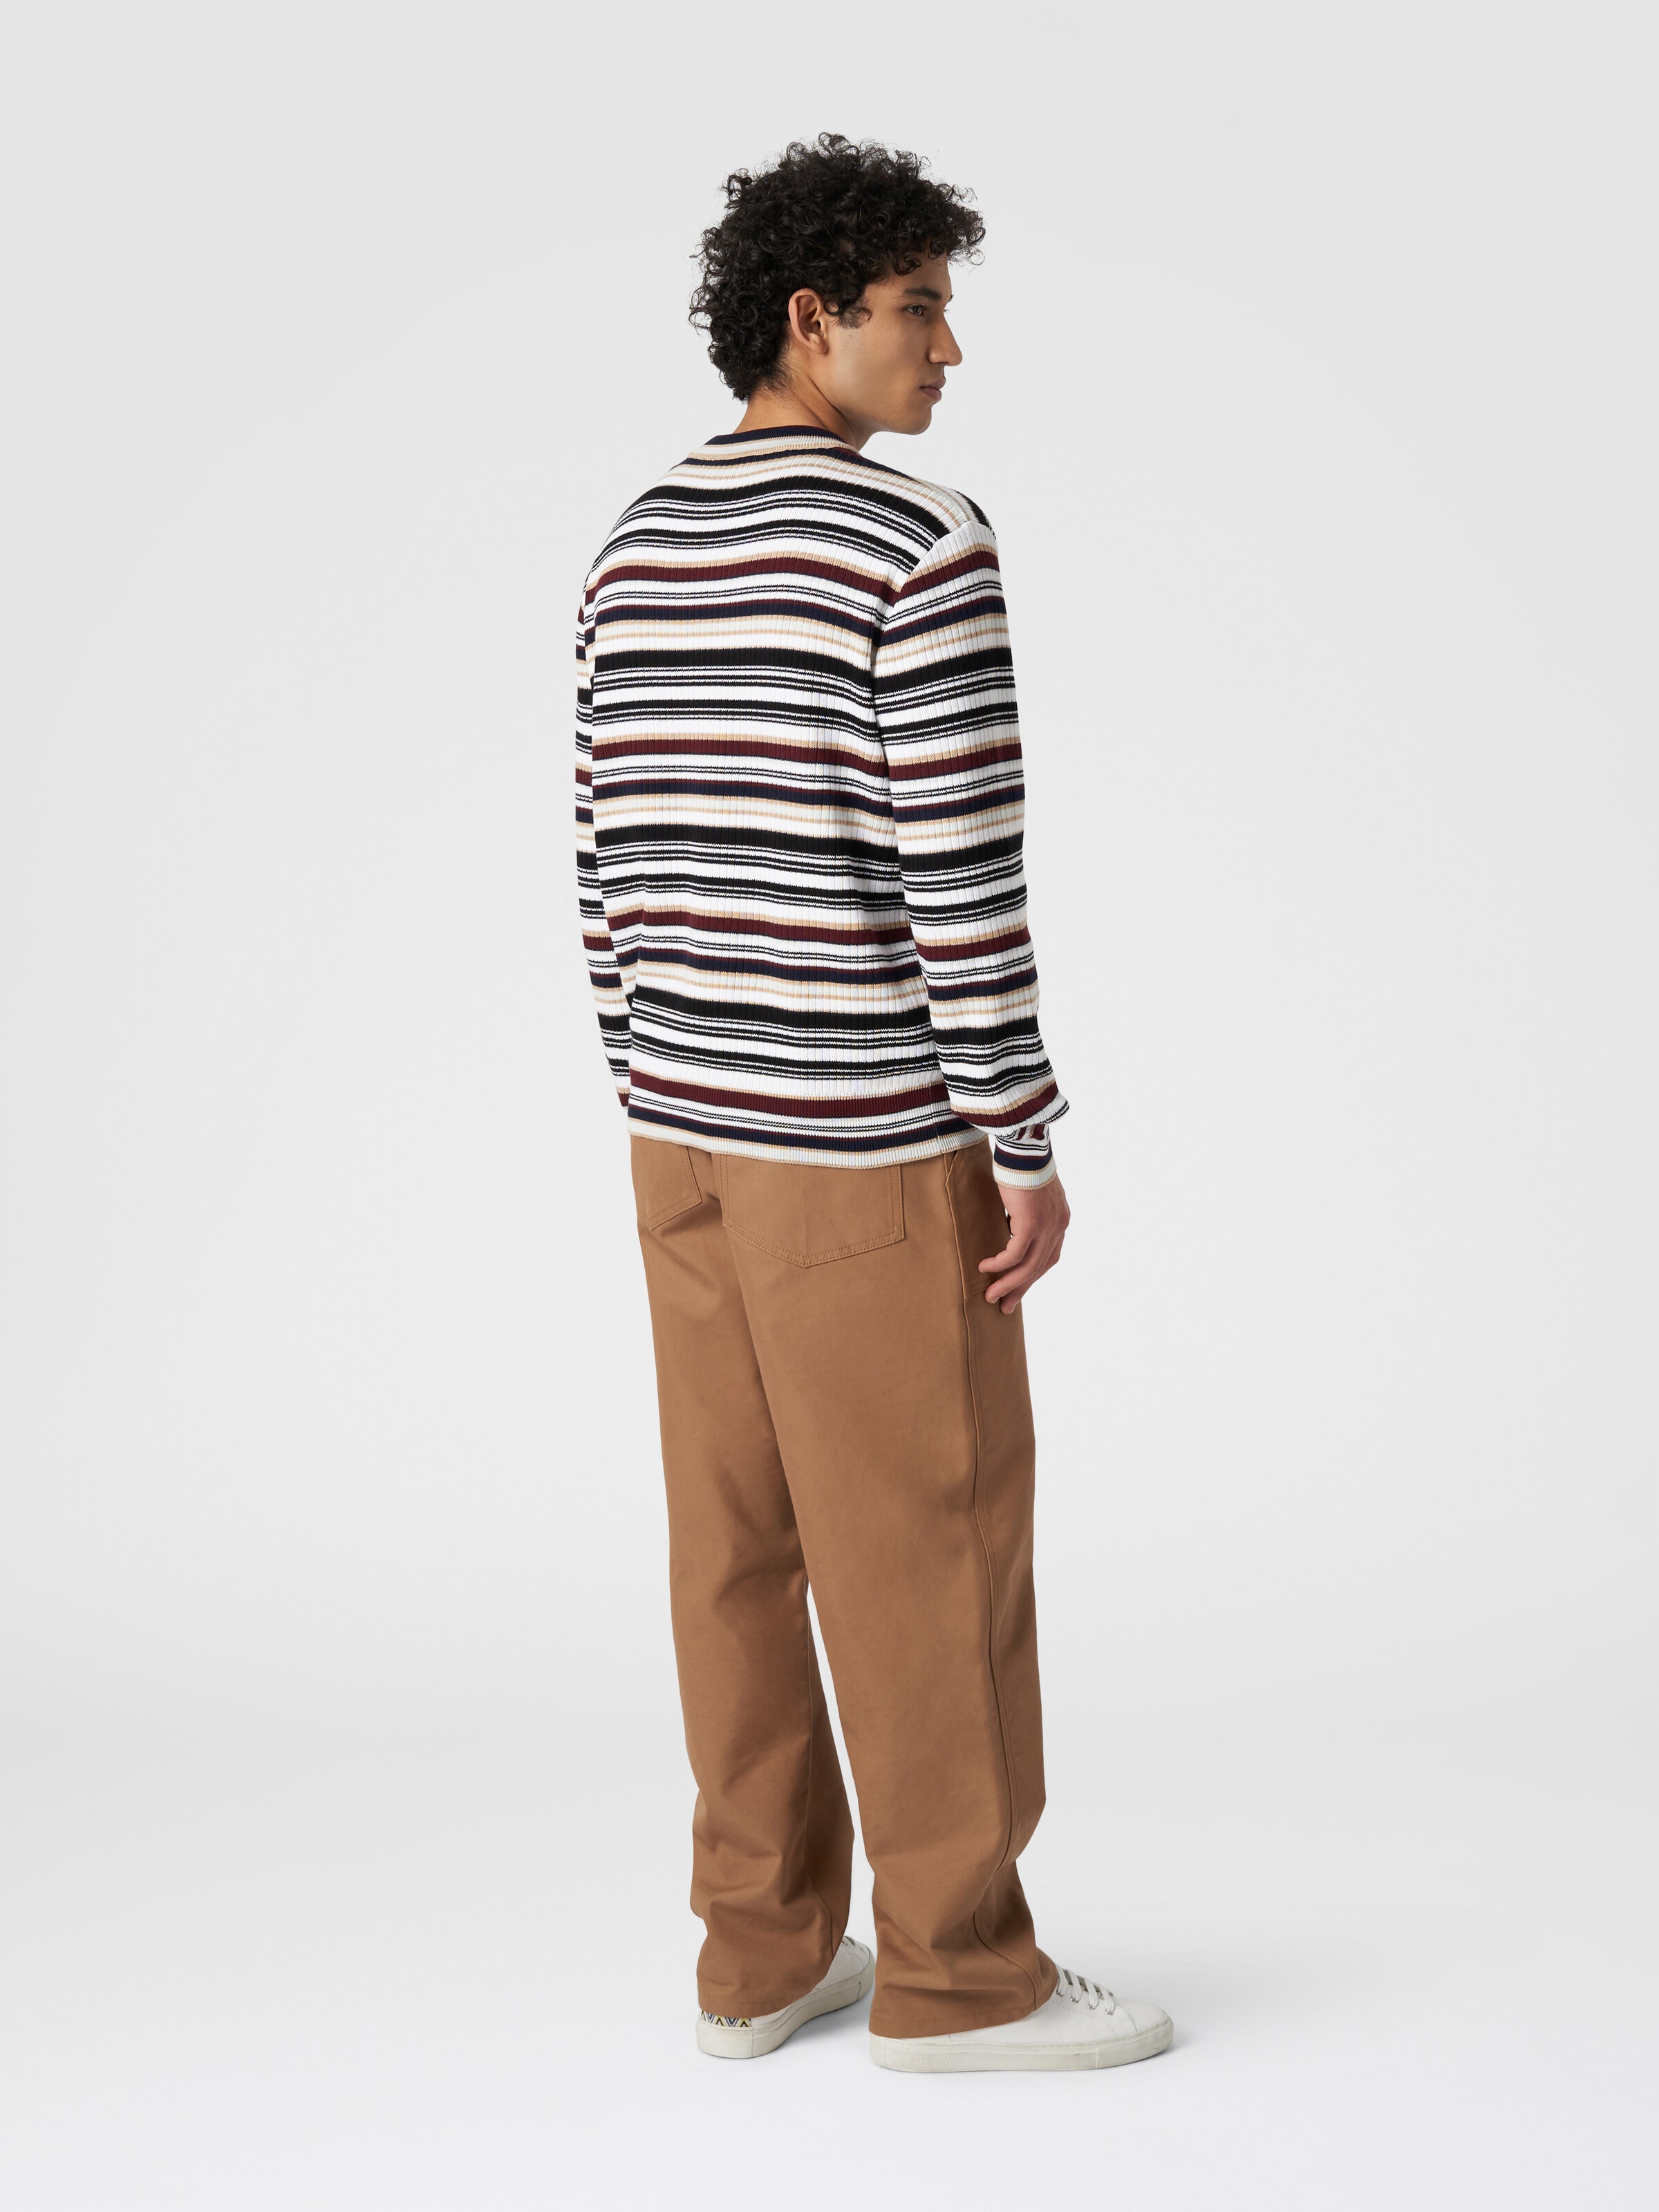 Crew-neck pullover in striped cotton, Multicoloured  - 2